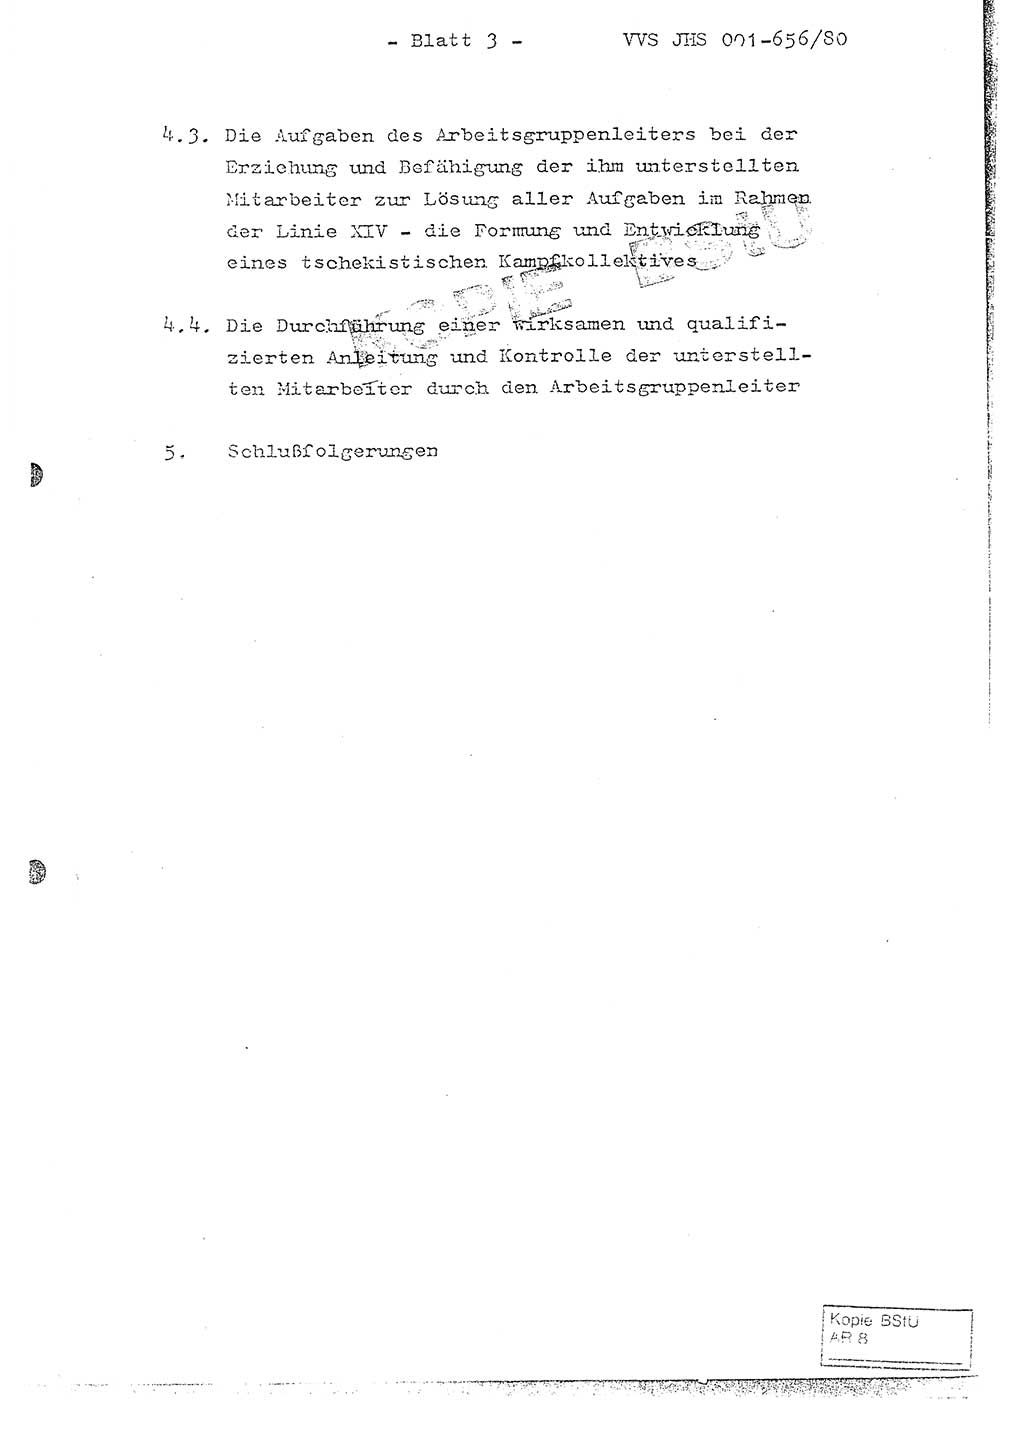 Fachschulabschlußarbeit Unterleutnant Christian Kätzel (Abt. ⅩⅣ), Ministerium für Staatssicherheit (MfS) [Deutsche Demokratische Republik (DDR)], Juristische Hochschule (JHS), Vertrauliche Verschlußsache (VVS) 001-656/80, Potsdam 1980, Blatt 3 (FS-Abschl.-Arb. MfS DDR JHS VVS 001-656/80 1980, Bl. 3)